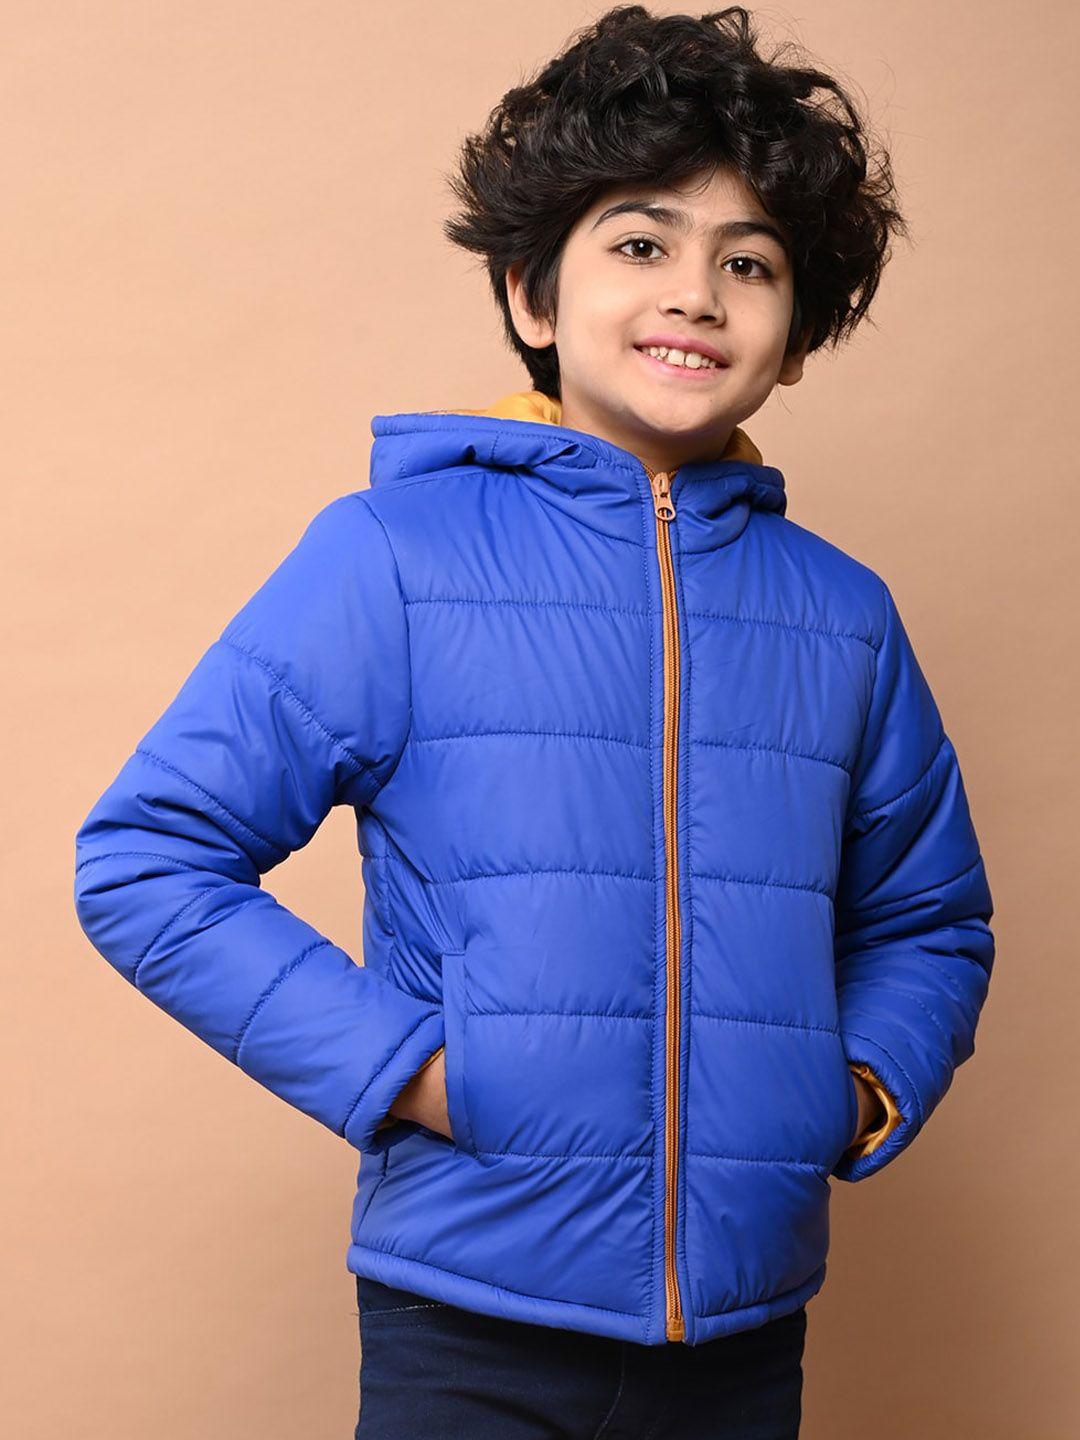 lilpicks-boys-blue-lightweight-outdoor-puffer-jacket